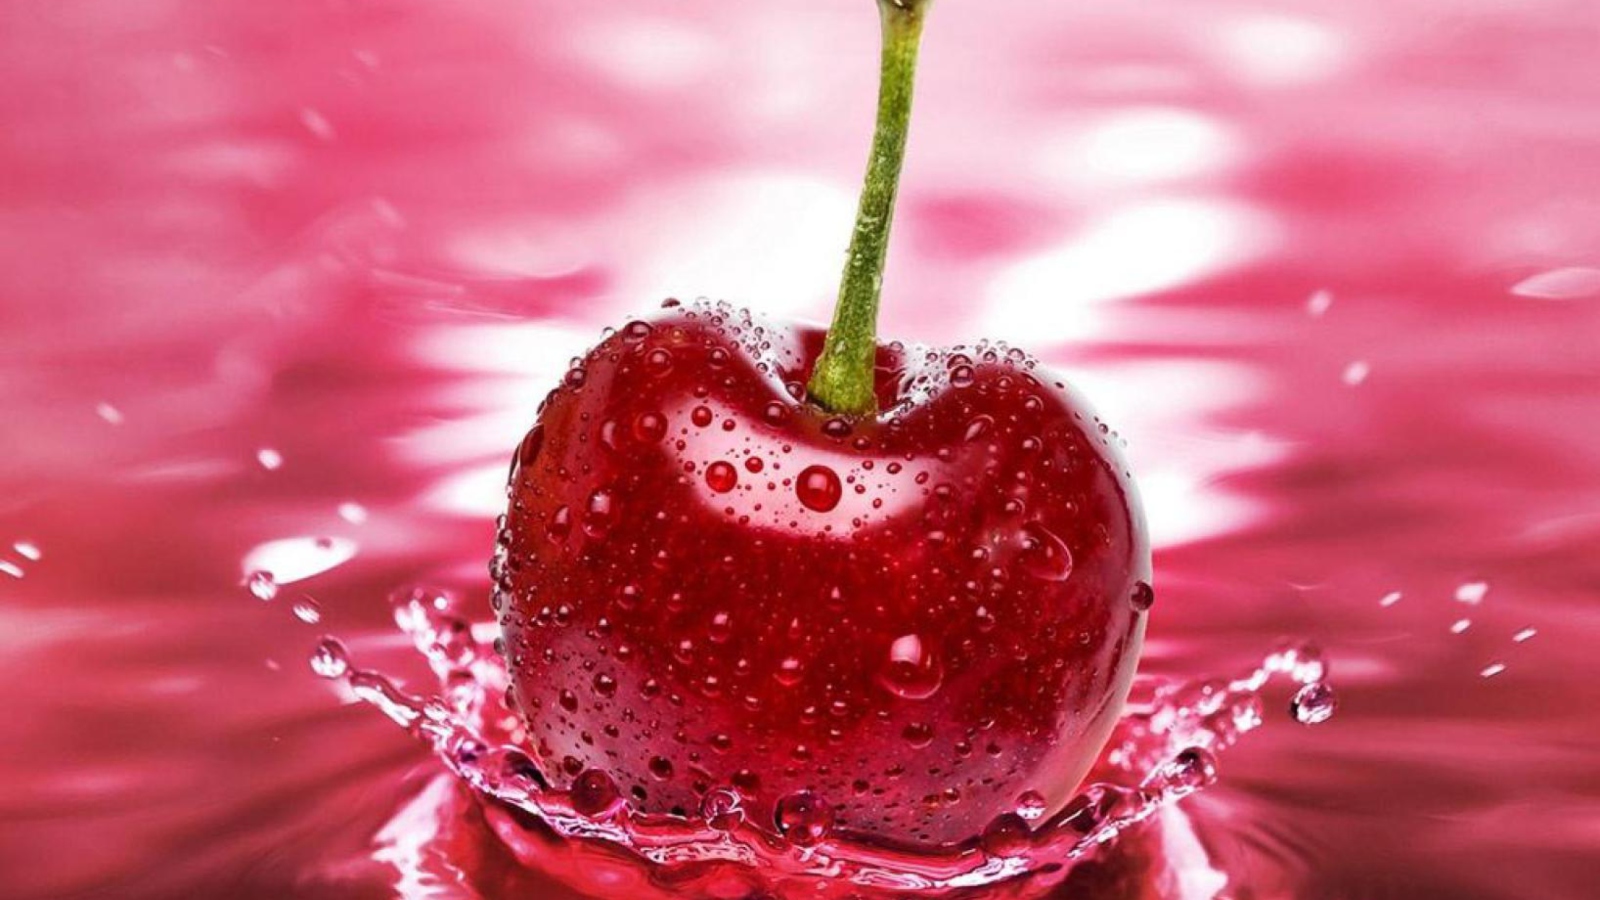 Das Red Cherry Splash Wallpaper 1600x900